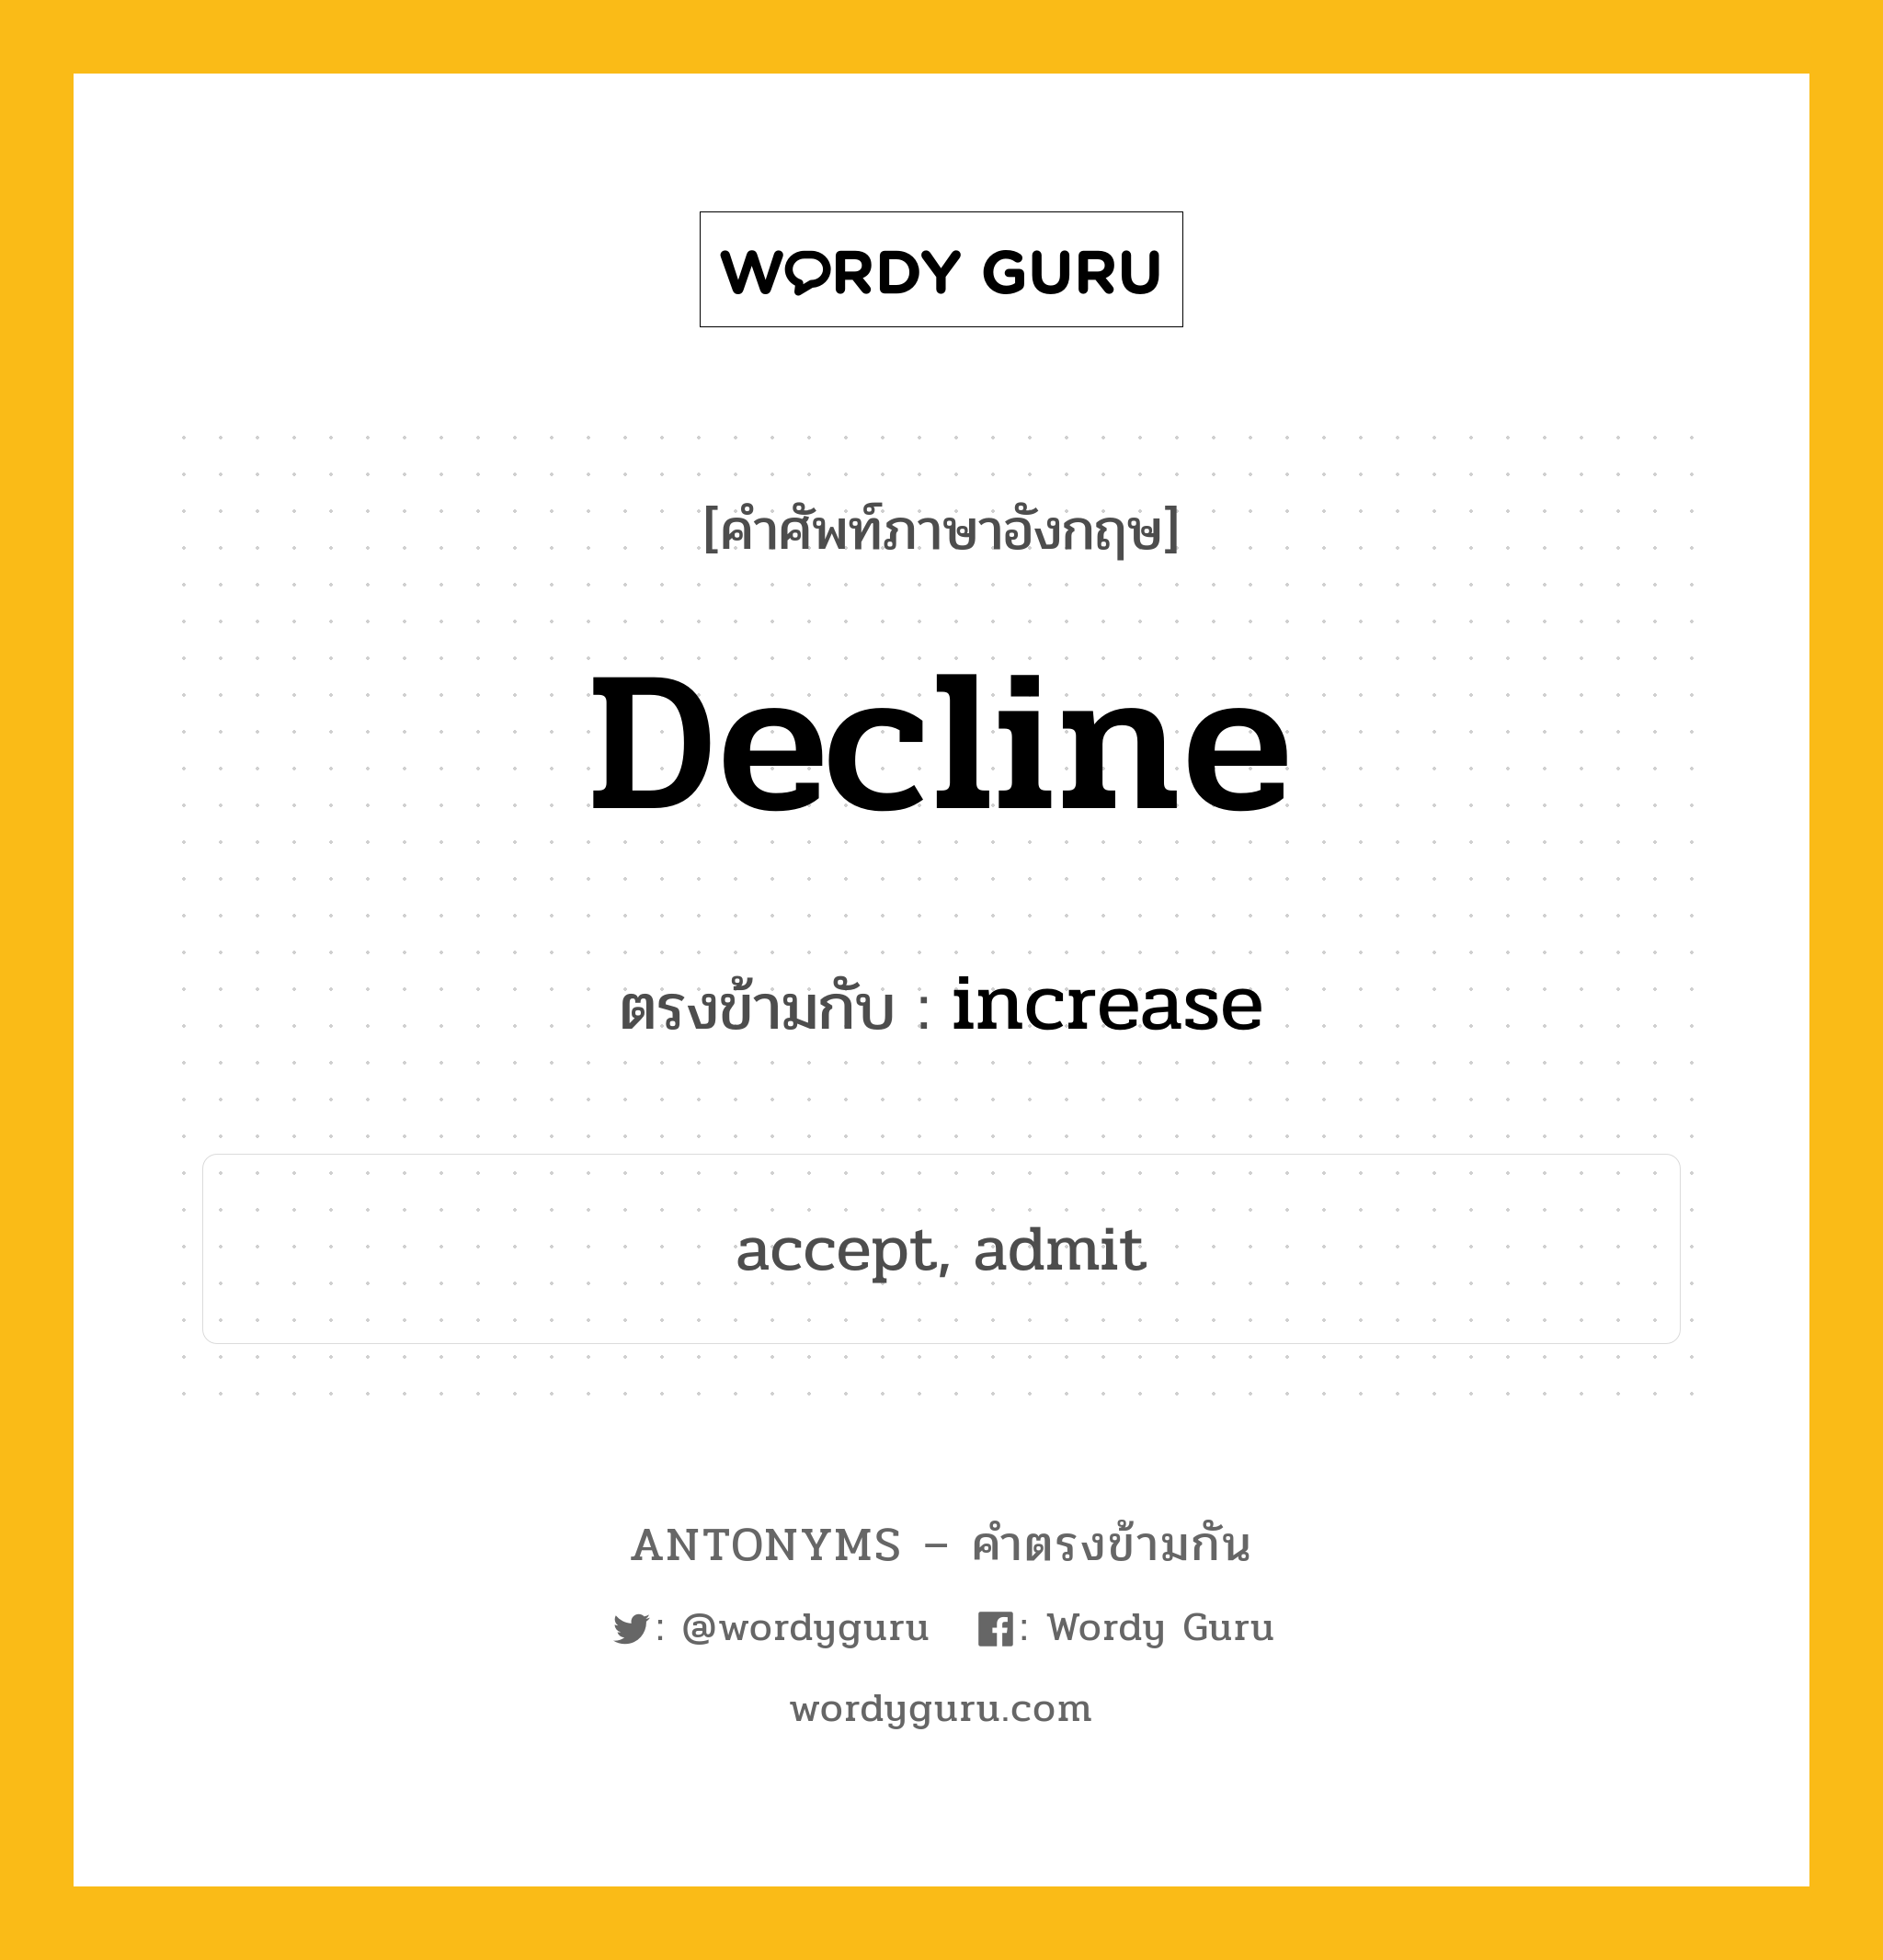 decline เป็นคำตรงข้ามกับคำไหนบ้าง?, คำศัพท์ภาษาอังกฤษ decline ตรงข้ามกับ increase หมวด increase